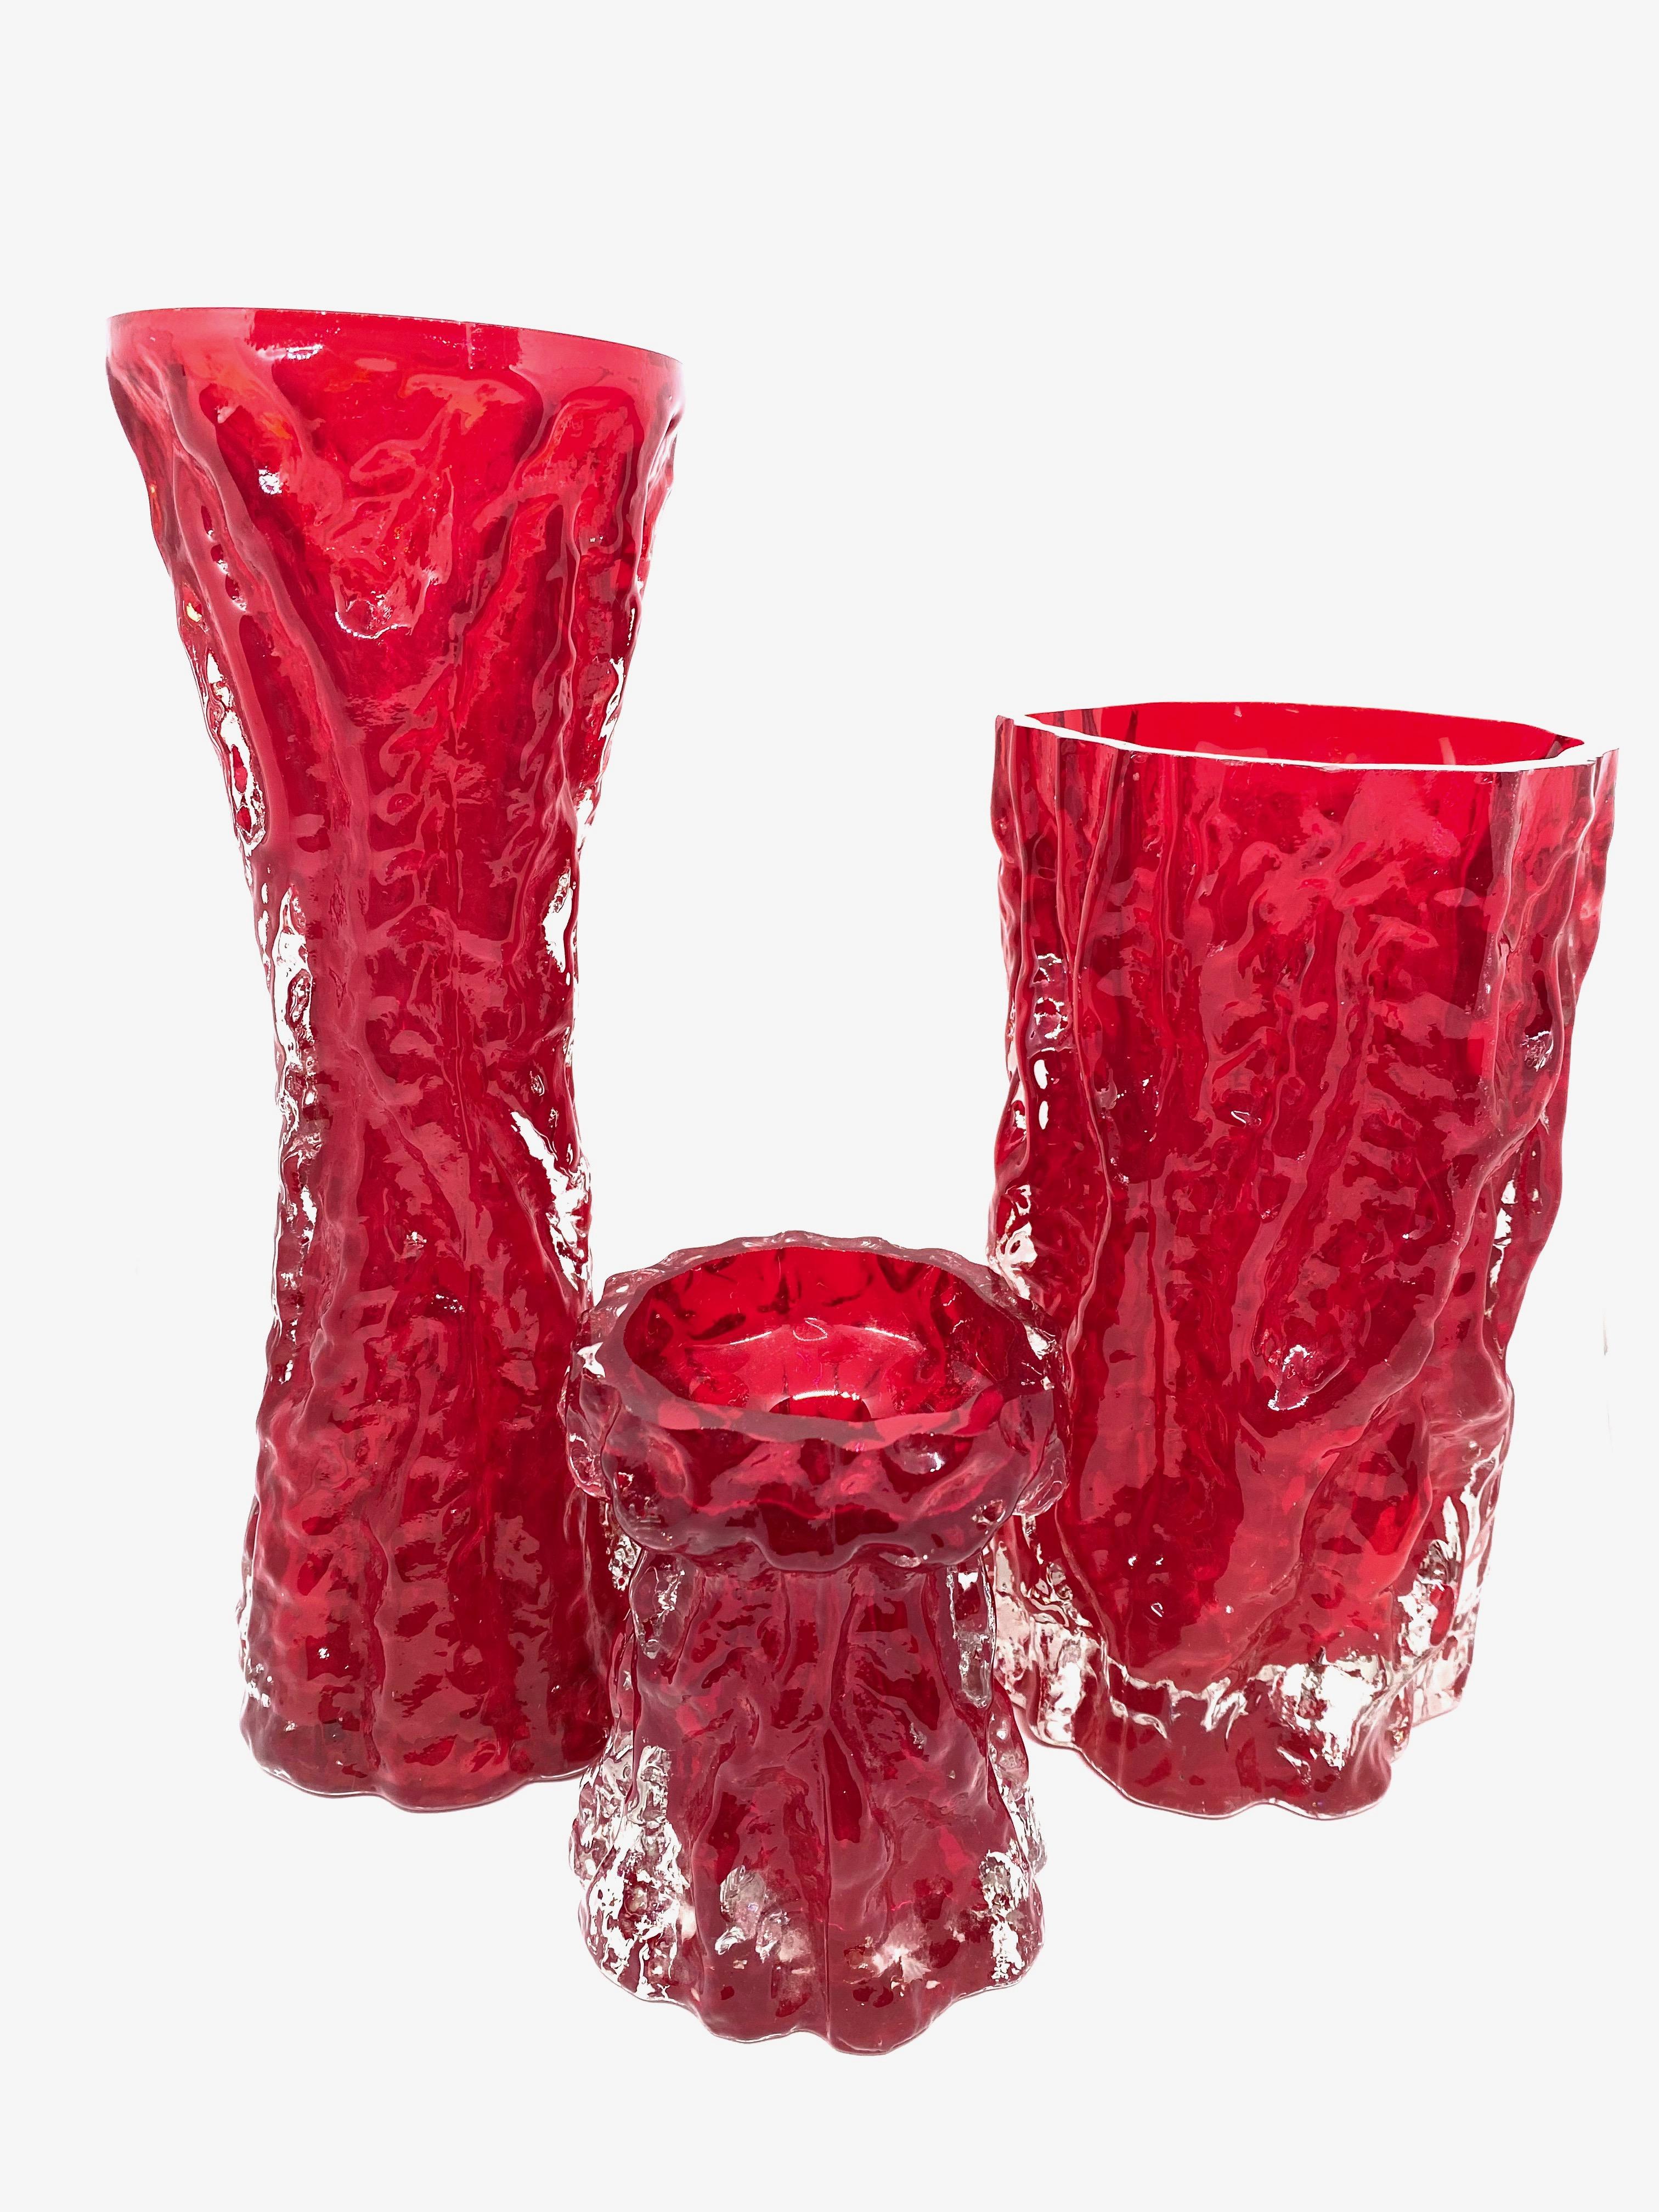 Wunderschöne deutsche Vasen aus der Jahrhundertmitte von Ingrid Glass, um 1970. Diese wunderschönen tiefroten und klaren Vasen bringen einen Hauch von Spaß und Fantasie in jeden Raum. Eine schöne Ergänzung für jeden Raum. Das größte Exemplar ist